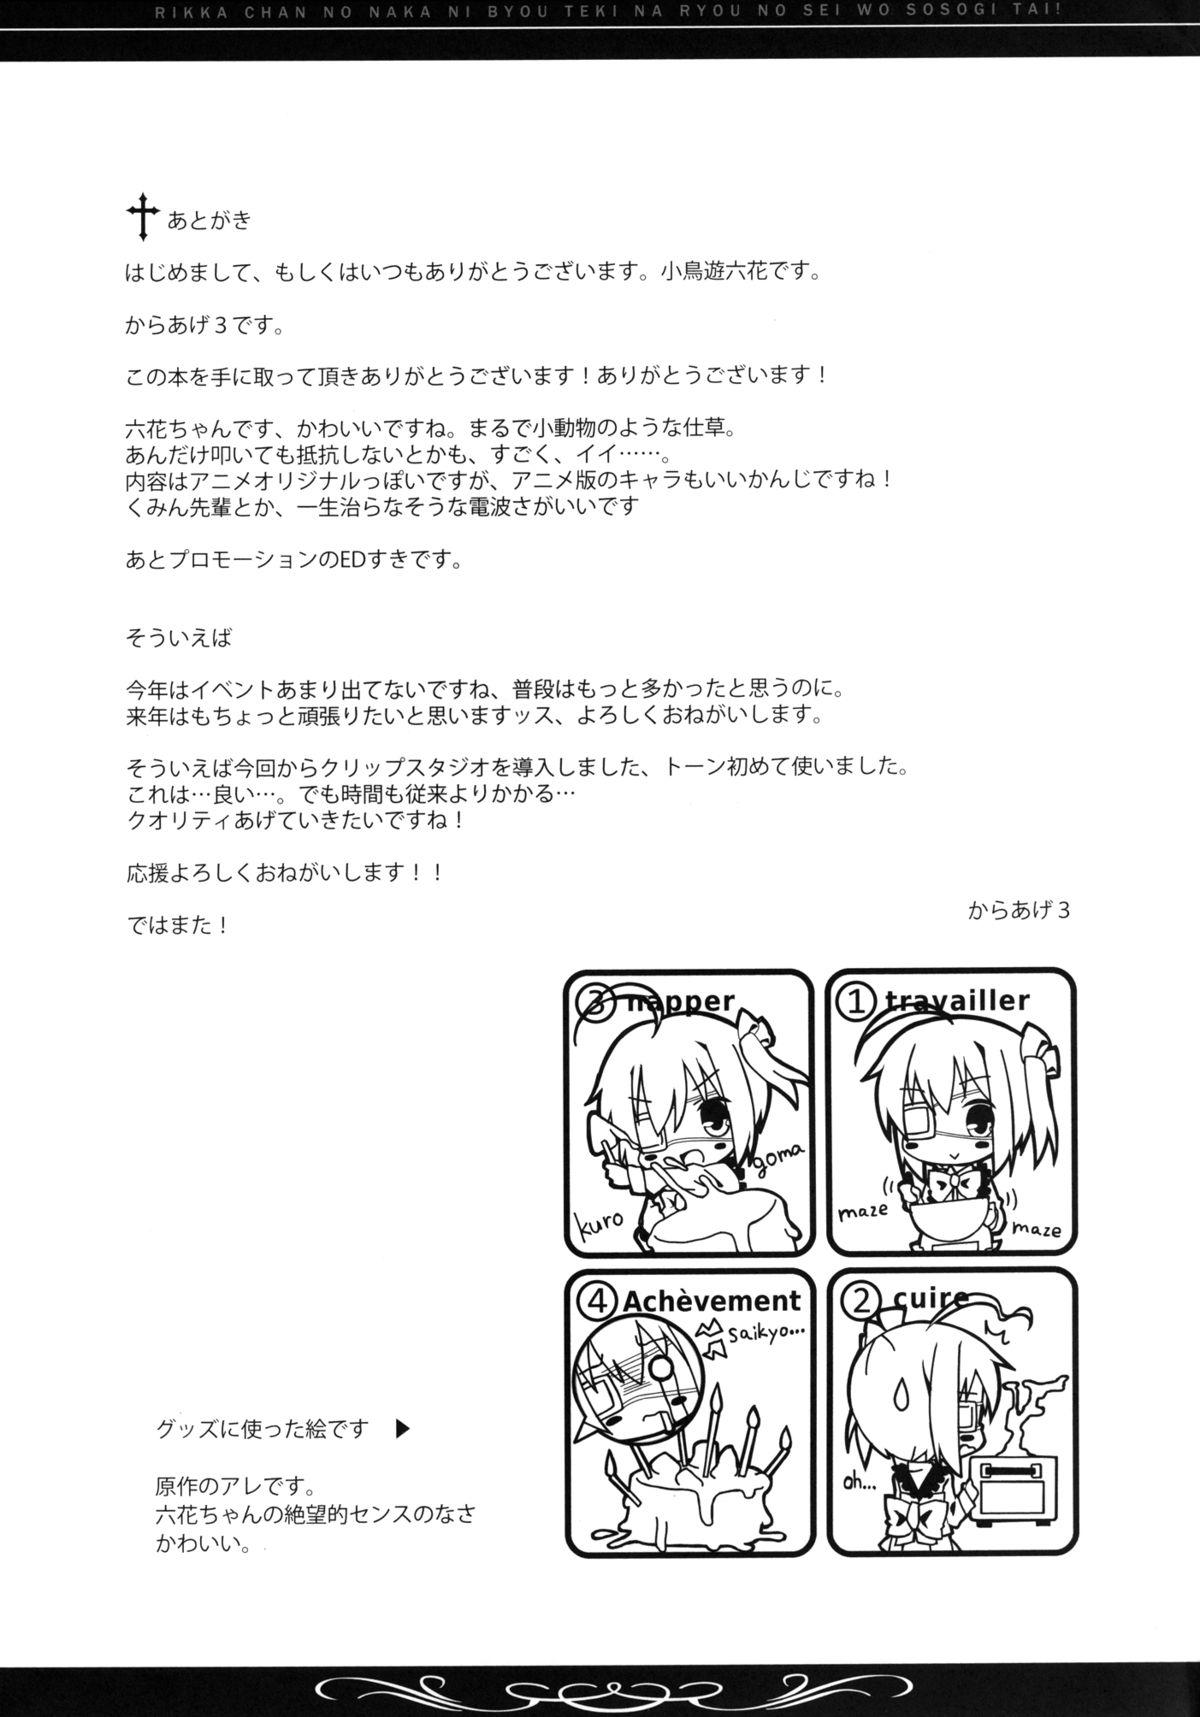 Reversecowgirl Rikka-chan no Naka ni, Byouteki na Ryou no Sei o Sosogitai! - Chuunibyou demo koi ga shitai Oldyoung - Page 28